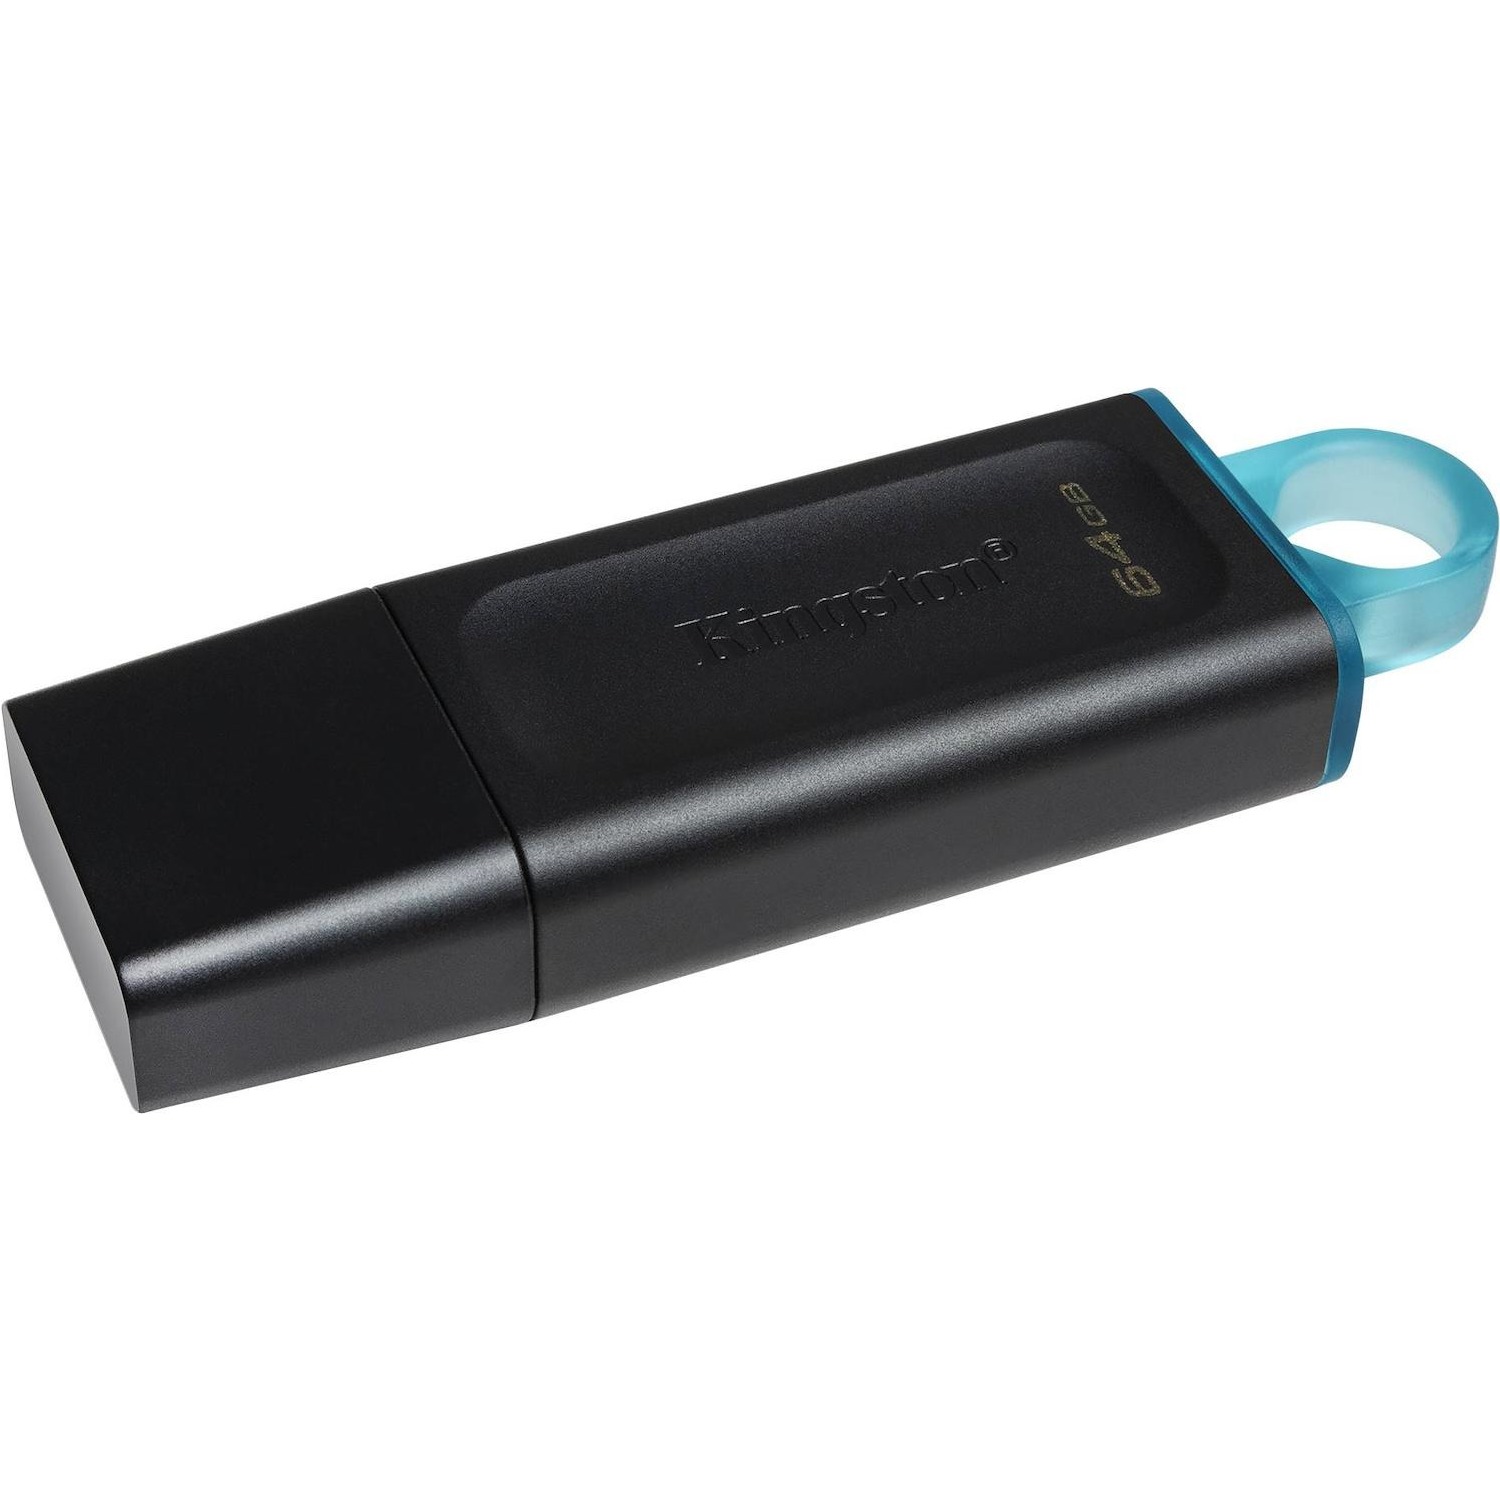 Immagine per Pen drive Kingston 64GB USB 3.2 da DIMOStore